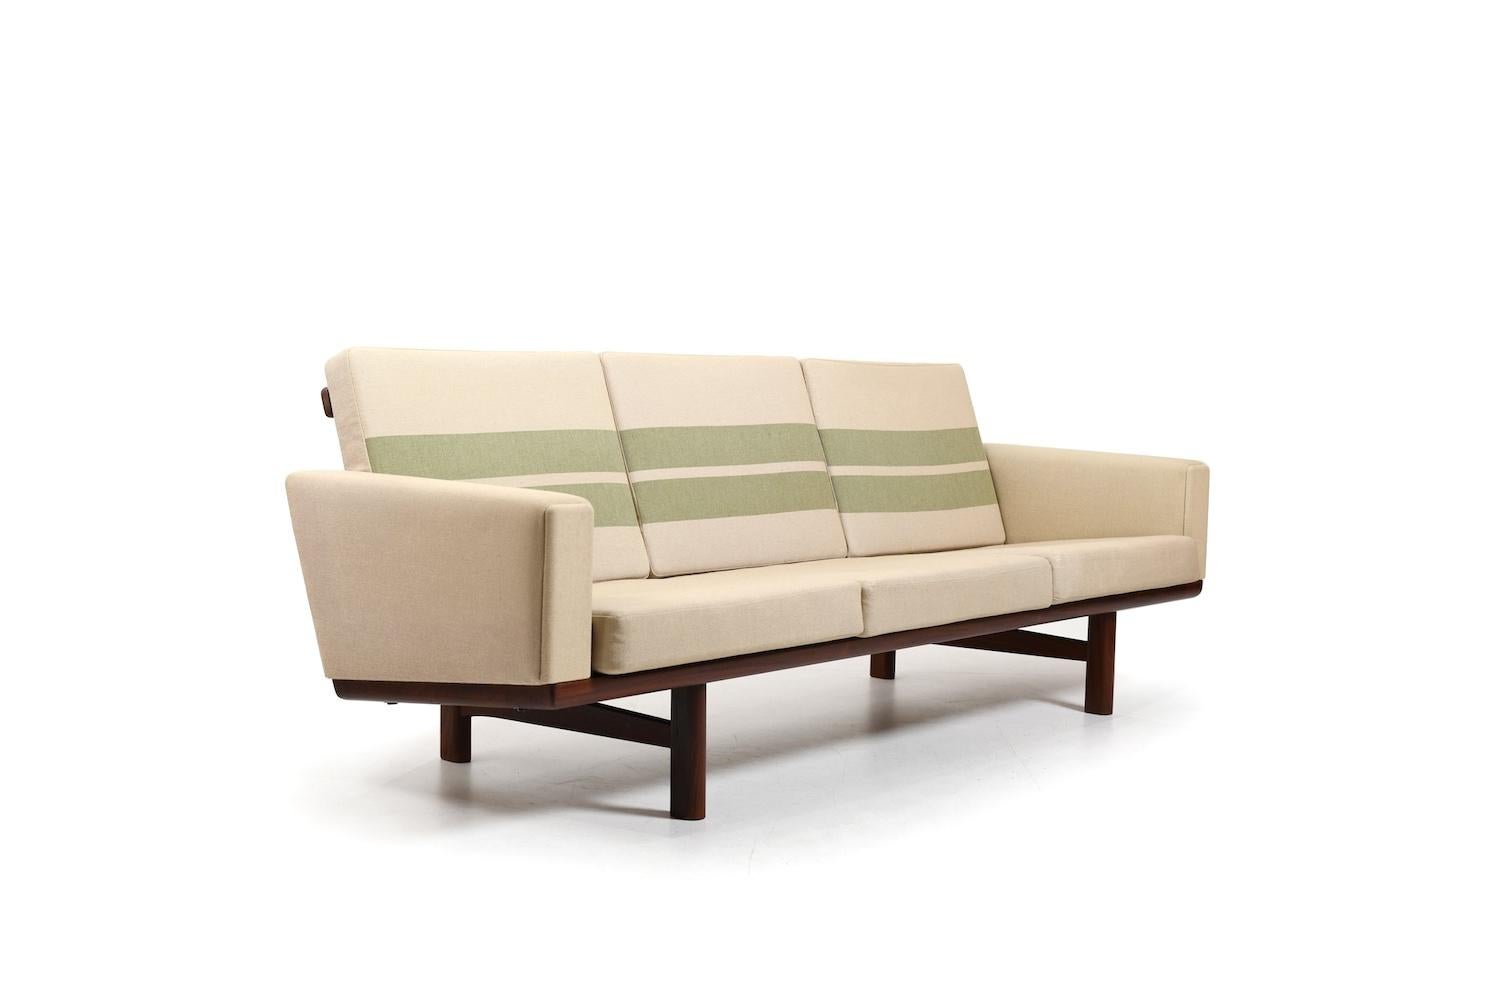 GE-236/3 Sofa in Teak by Hans J. Wegner 1960s For Sale 2